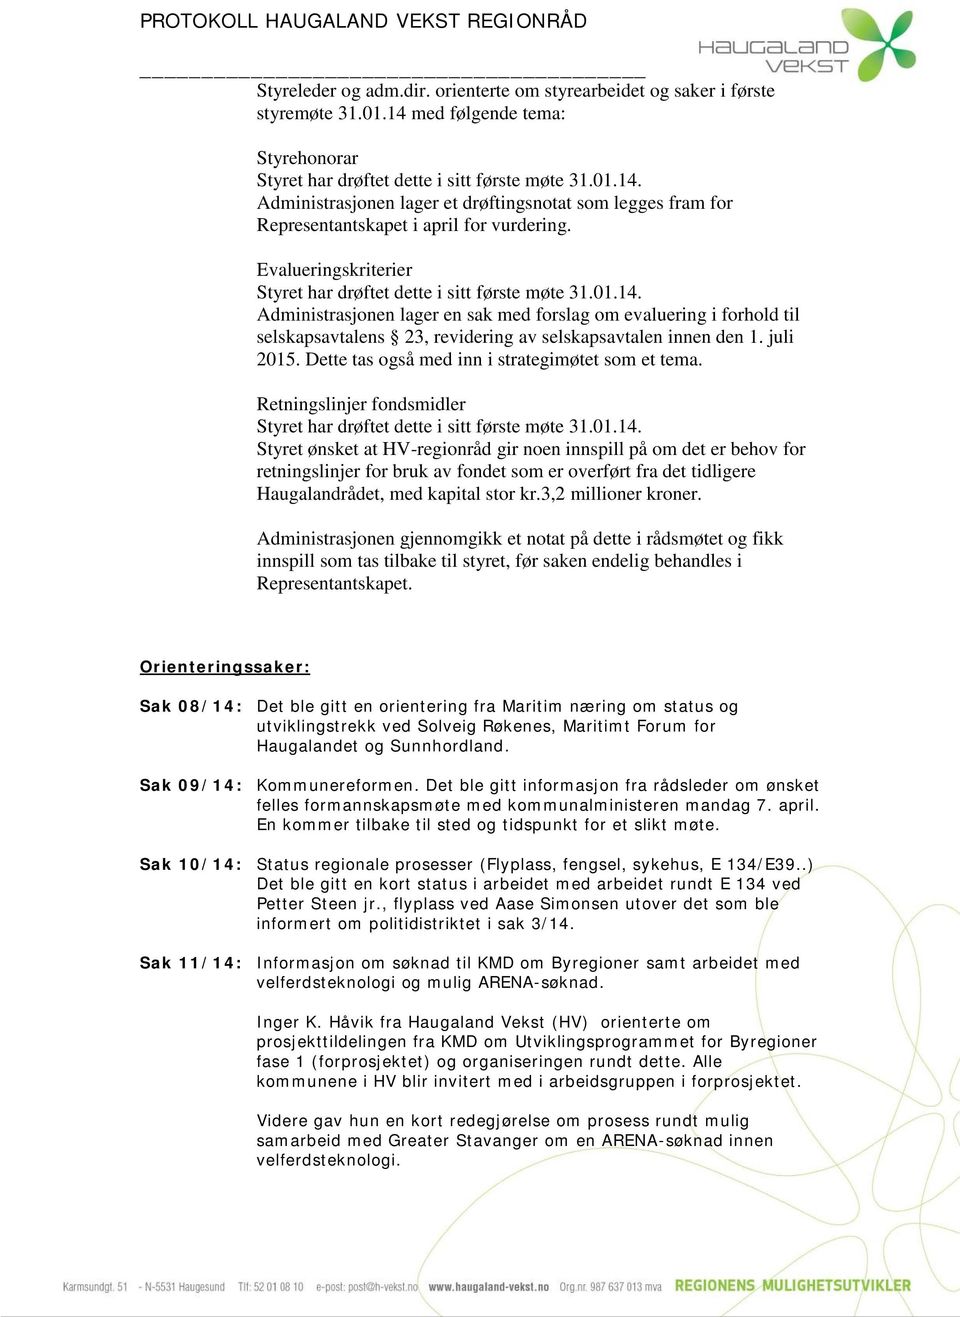 Evalueringskriterier Administrasjonen lager en sak med forslag om evaluering i forhold til selskapsavtalens 23, revidering av selskapsavtalen innen den 1. juli 2015.